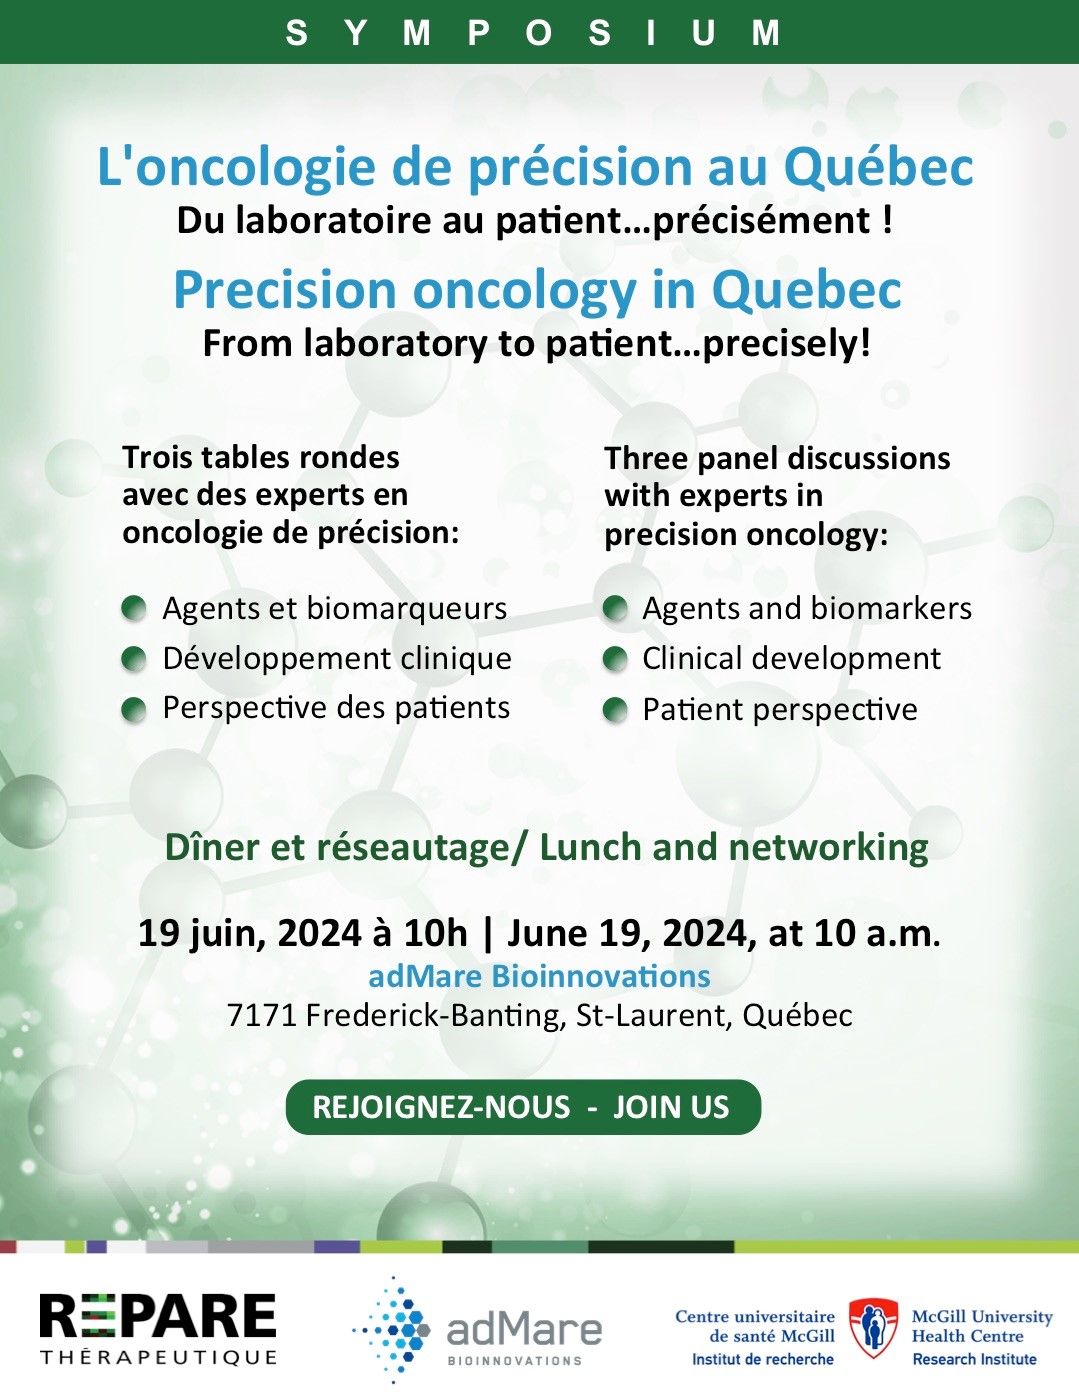 Symposium : L'oncologie de précision au Québec - Du laboratoire au patient... précisément !